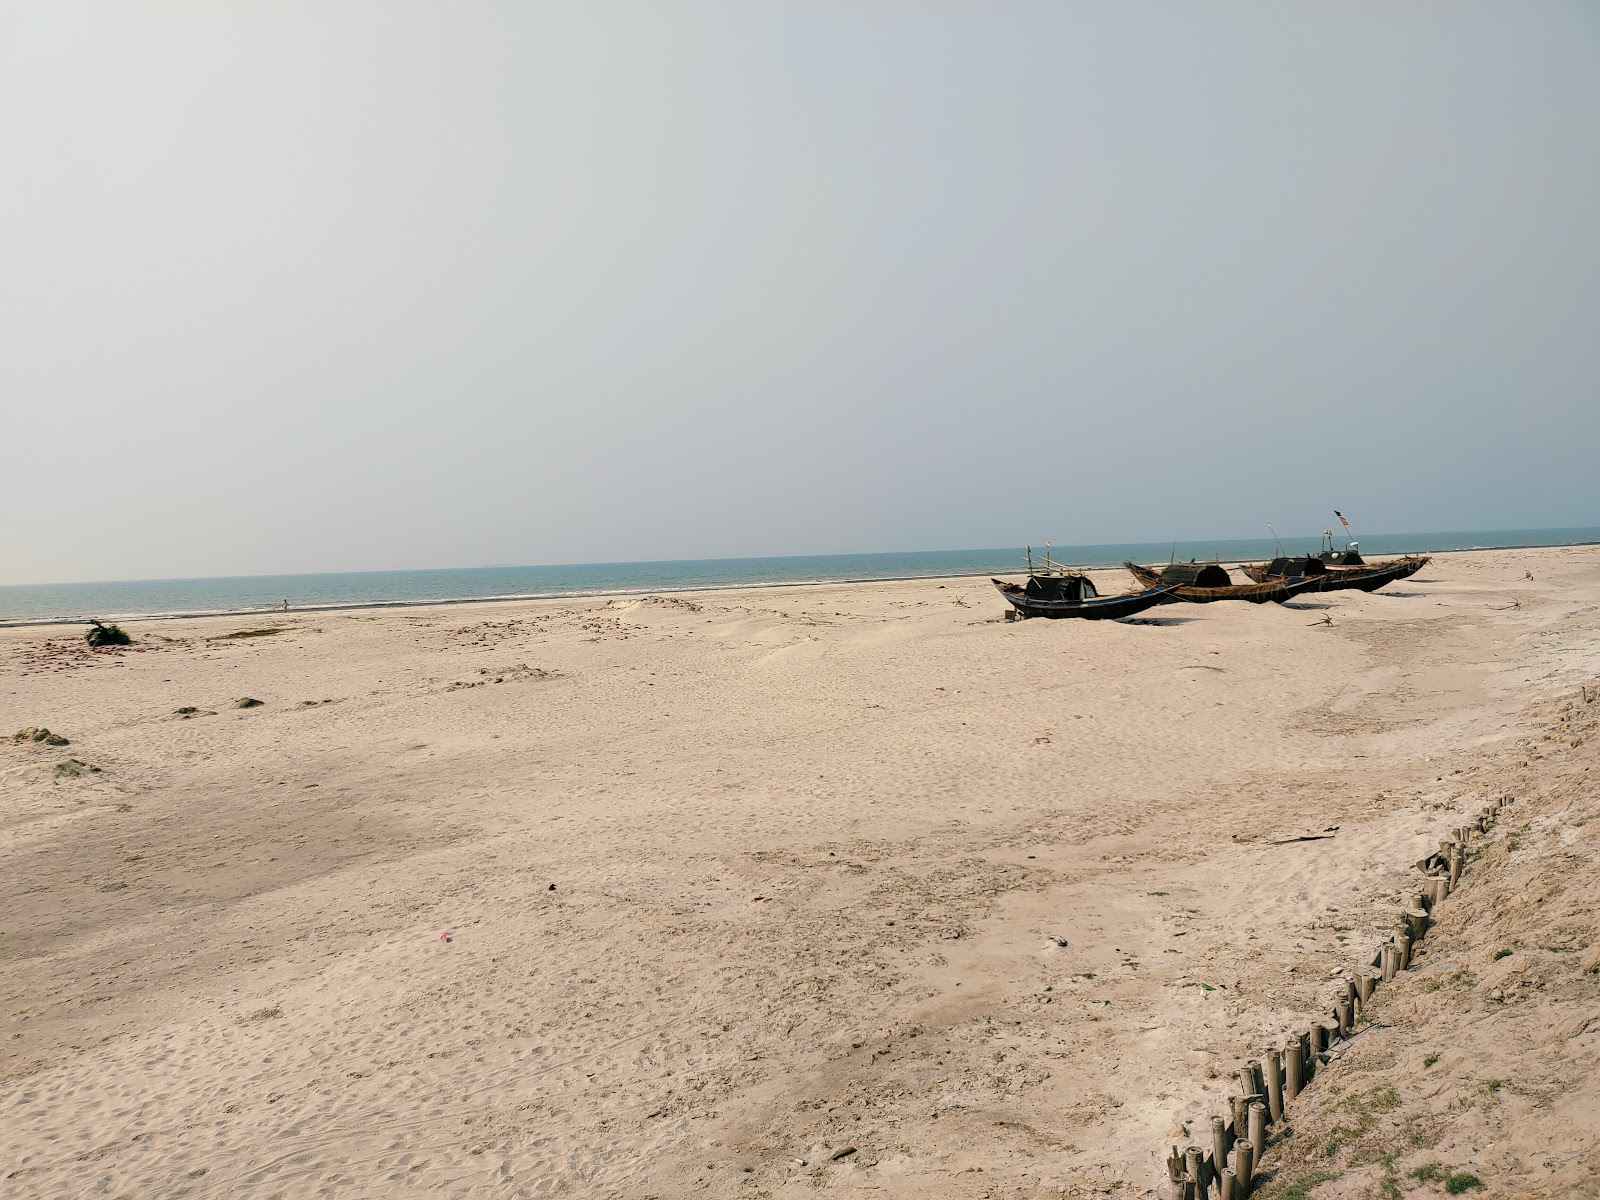 Dhabalat Beach'in fotoğrafı parlak kum yüzey ile